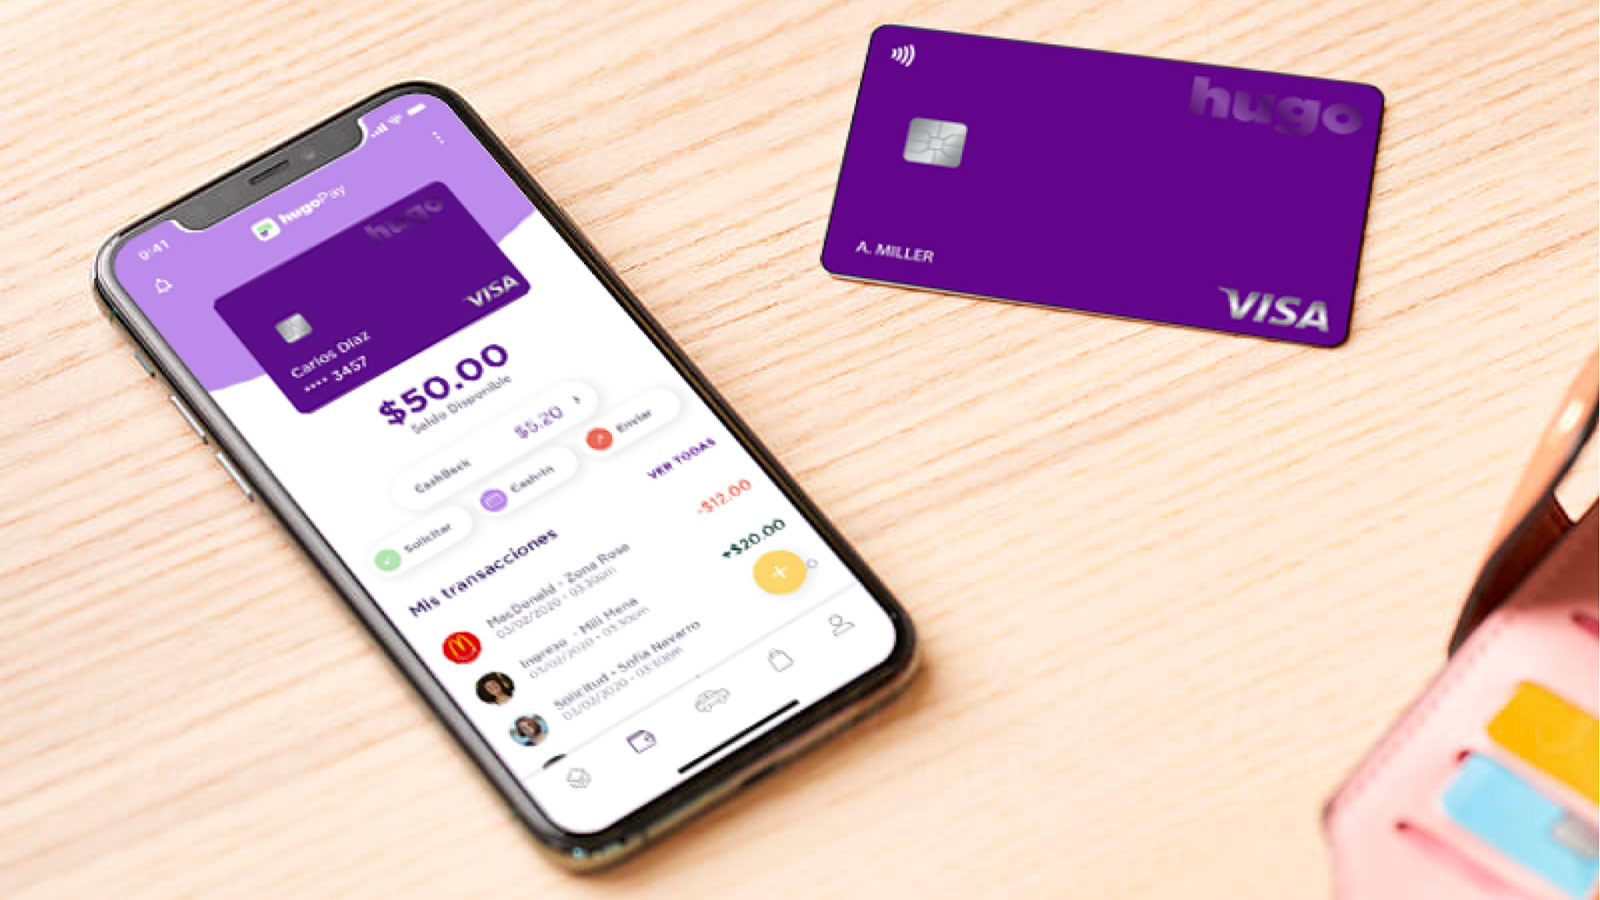 Celular con aplicación hugoPay y tarjeta Visa